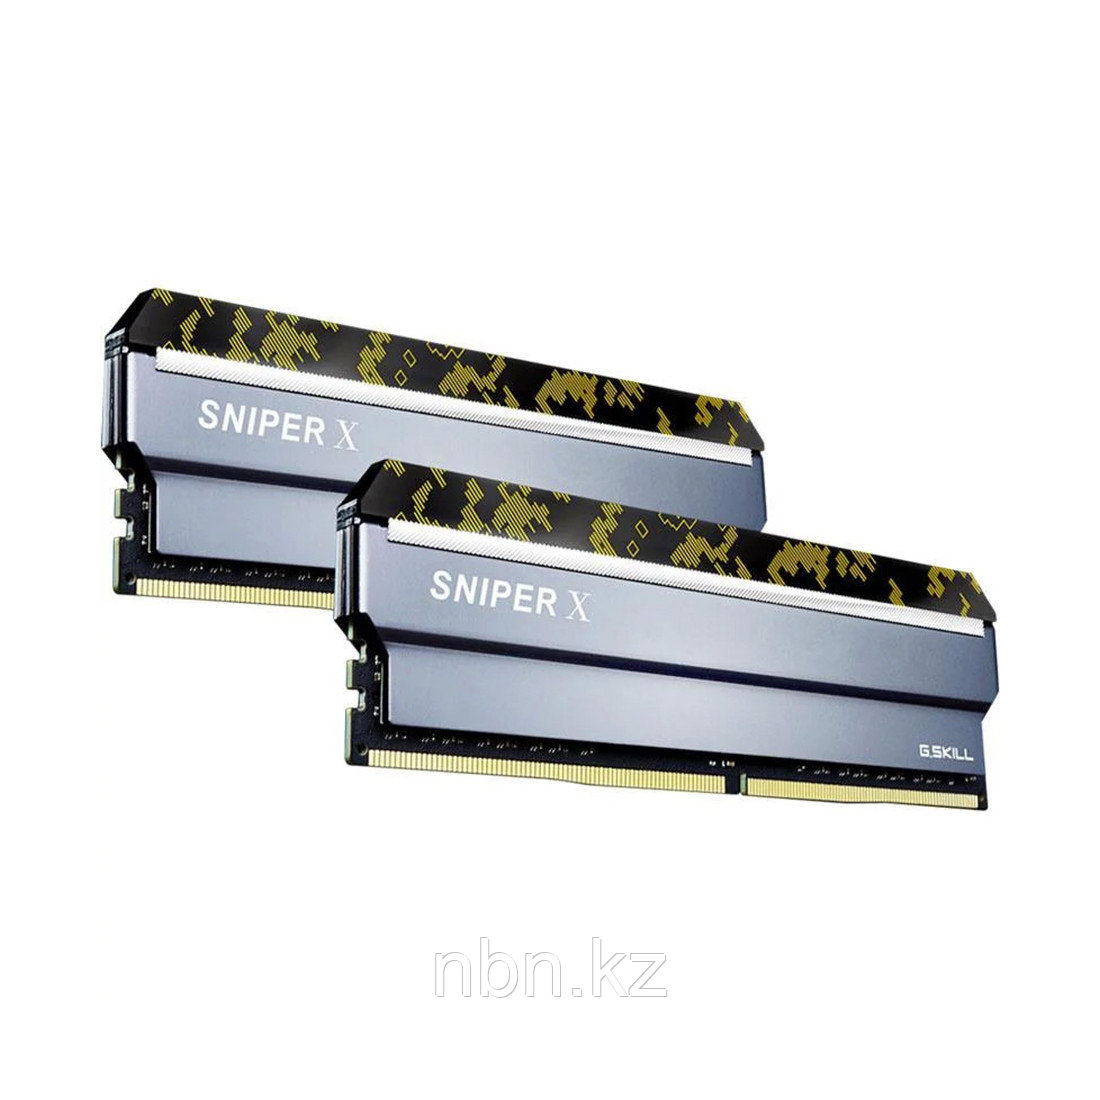 Комплект модулей памяти G.SKILL SniperX F4-2666C19D-16GSXK DDR4 16GB (Kit 2x8GB) 2666MHz, фото 1